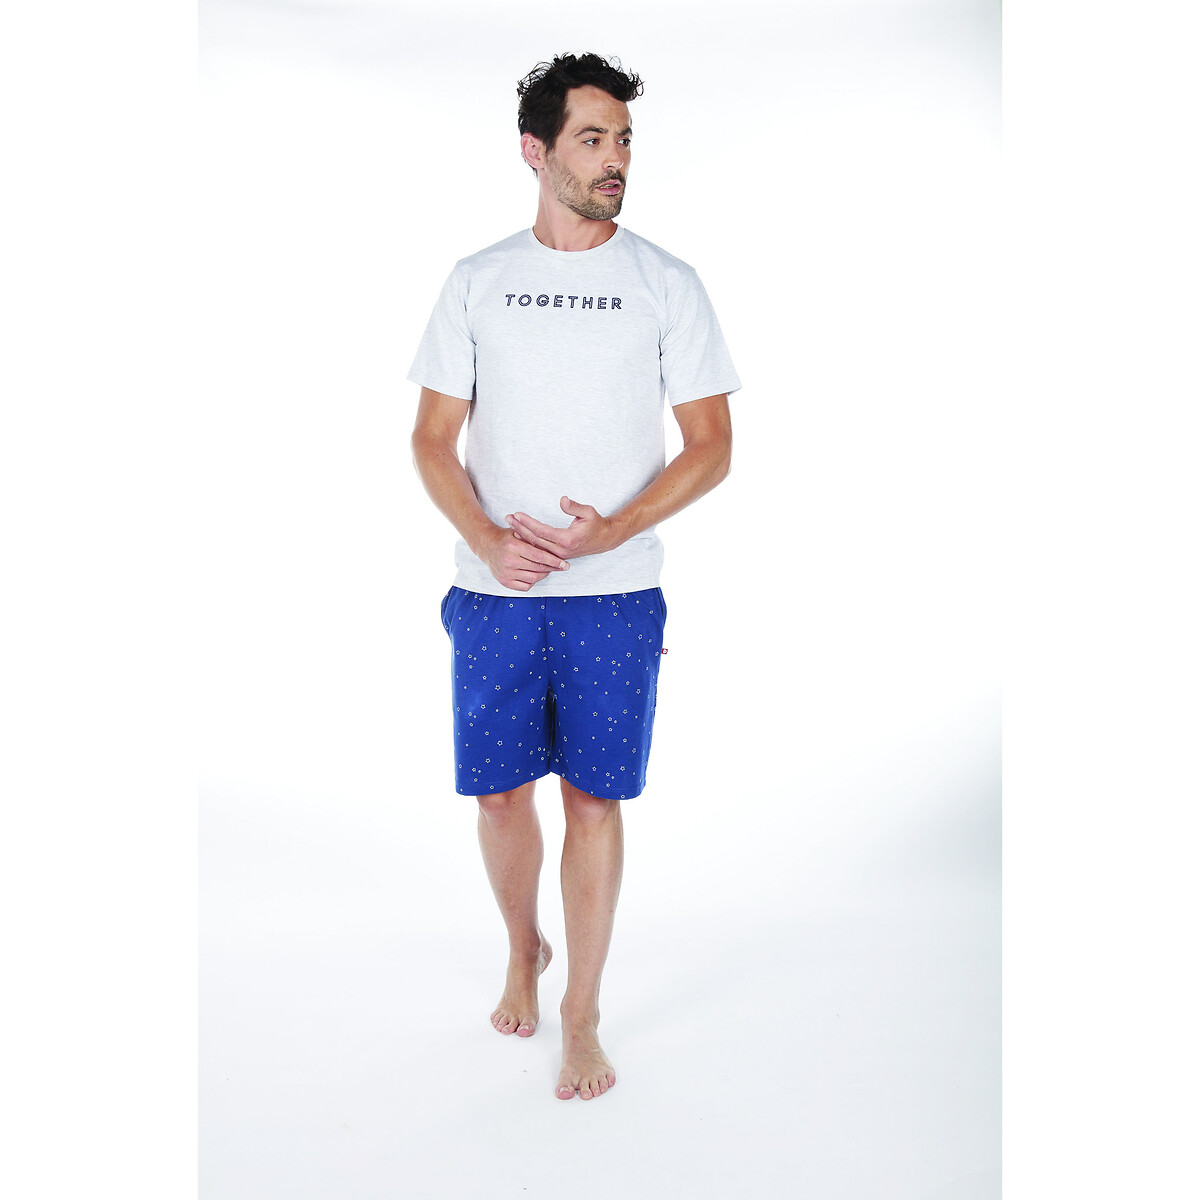 Пижама DODO С шортами с поясом на резинке Together XL серый, размер XL - фото 1